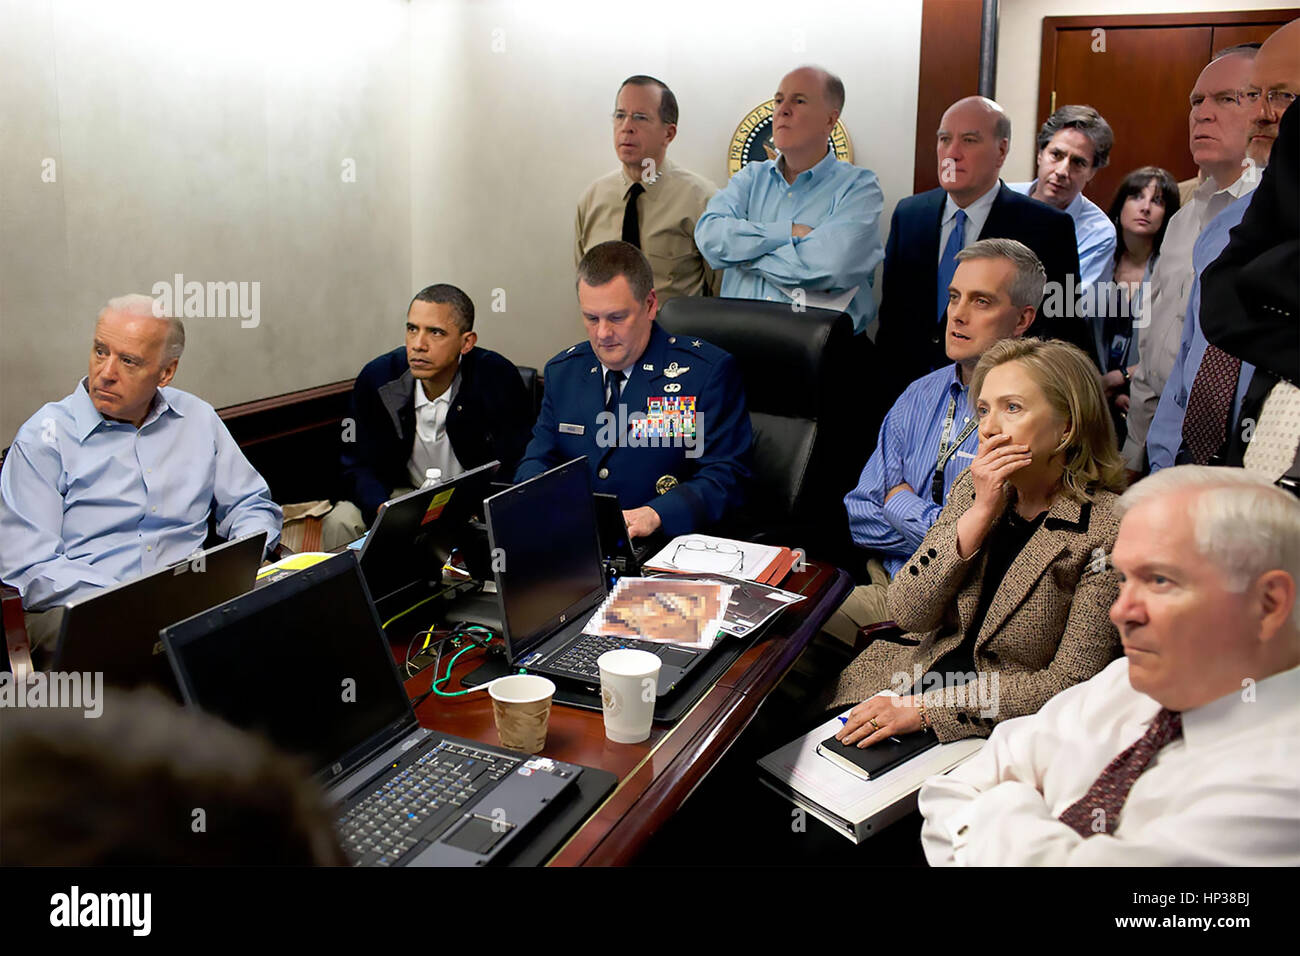 DIE SITUATION ROOM White House-Fotograf Pete Souza Foto des Augenblicks Präsident Obama und sein Team beobachtete den Angriff auf Osama Bin Laden Unterschlupf am 1. Mai 2011. Immobilienportal für Namen. Stockfoto